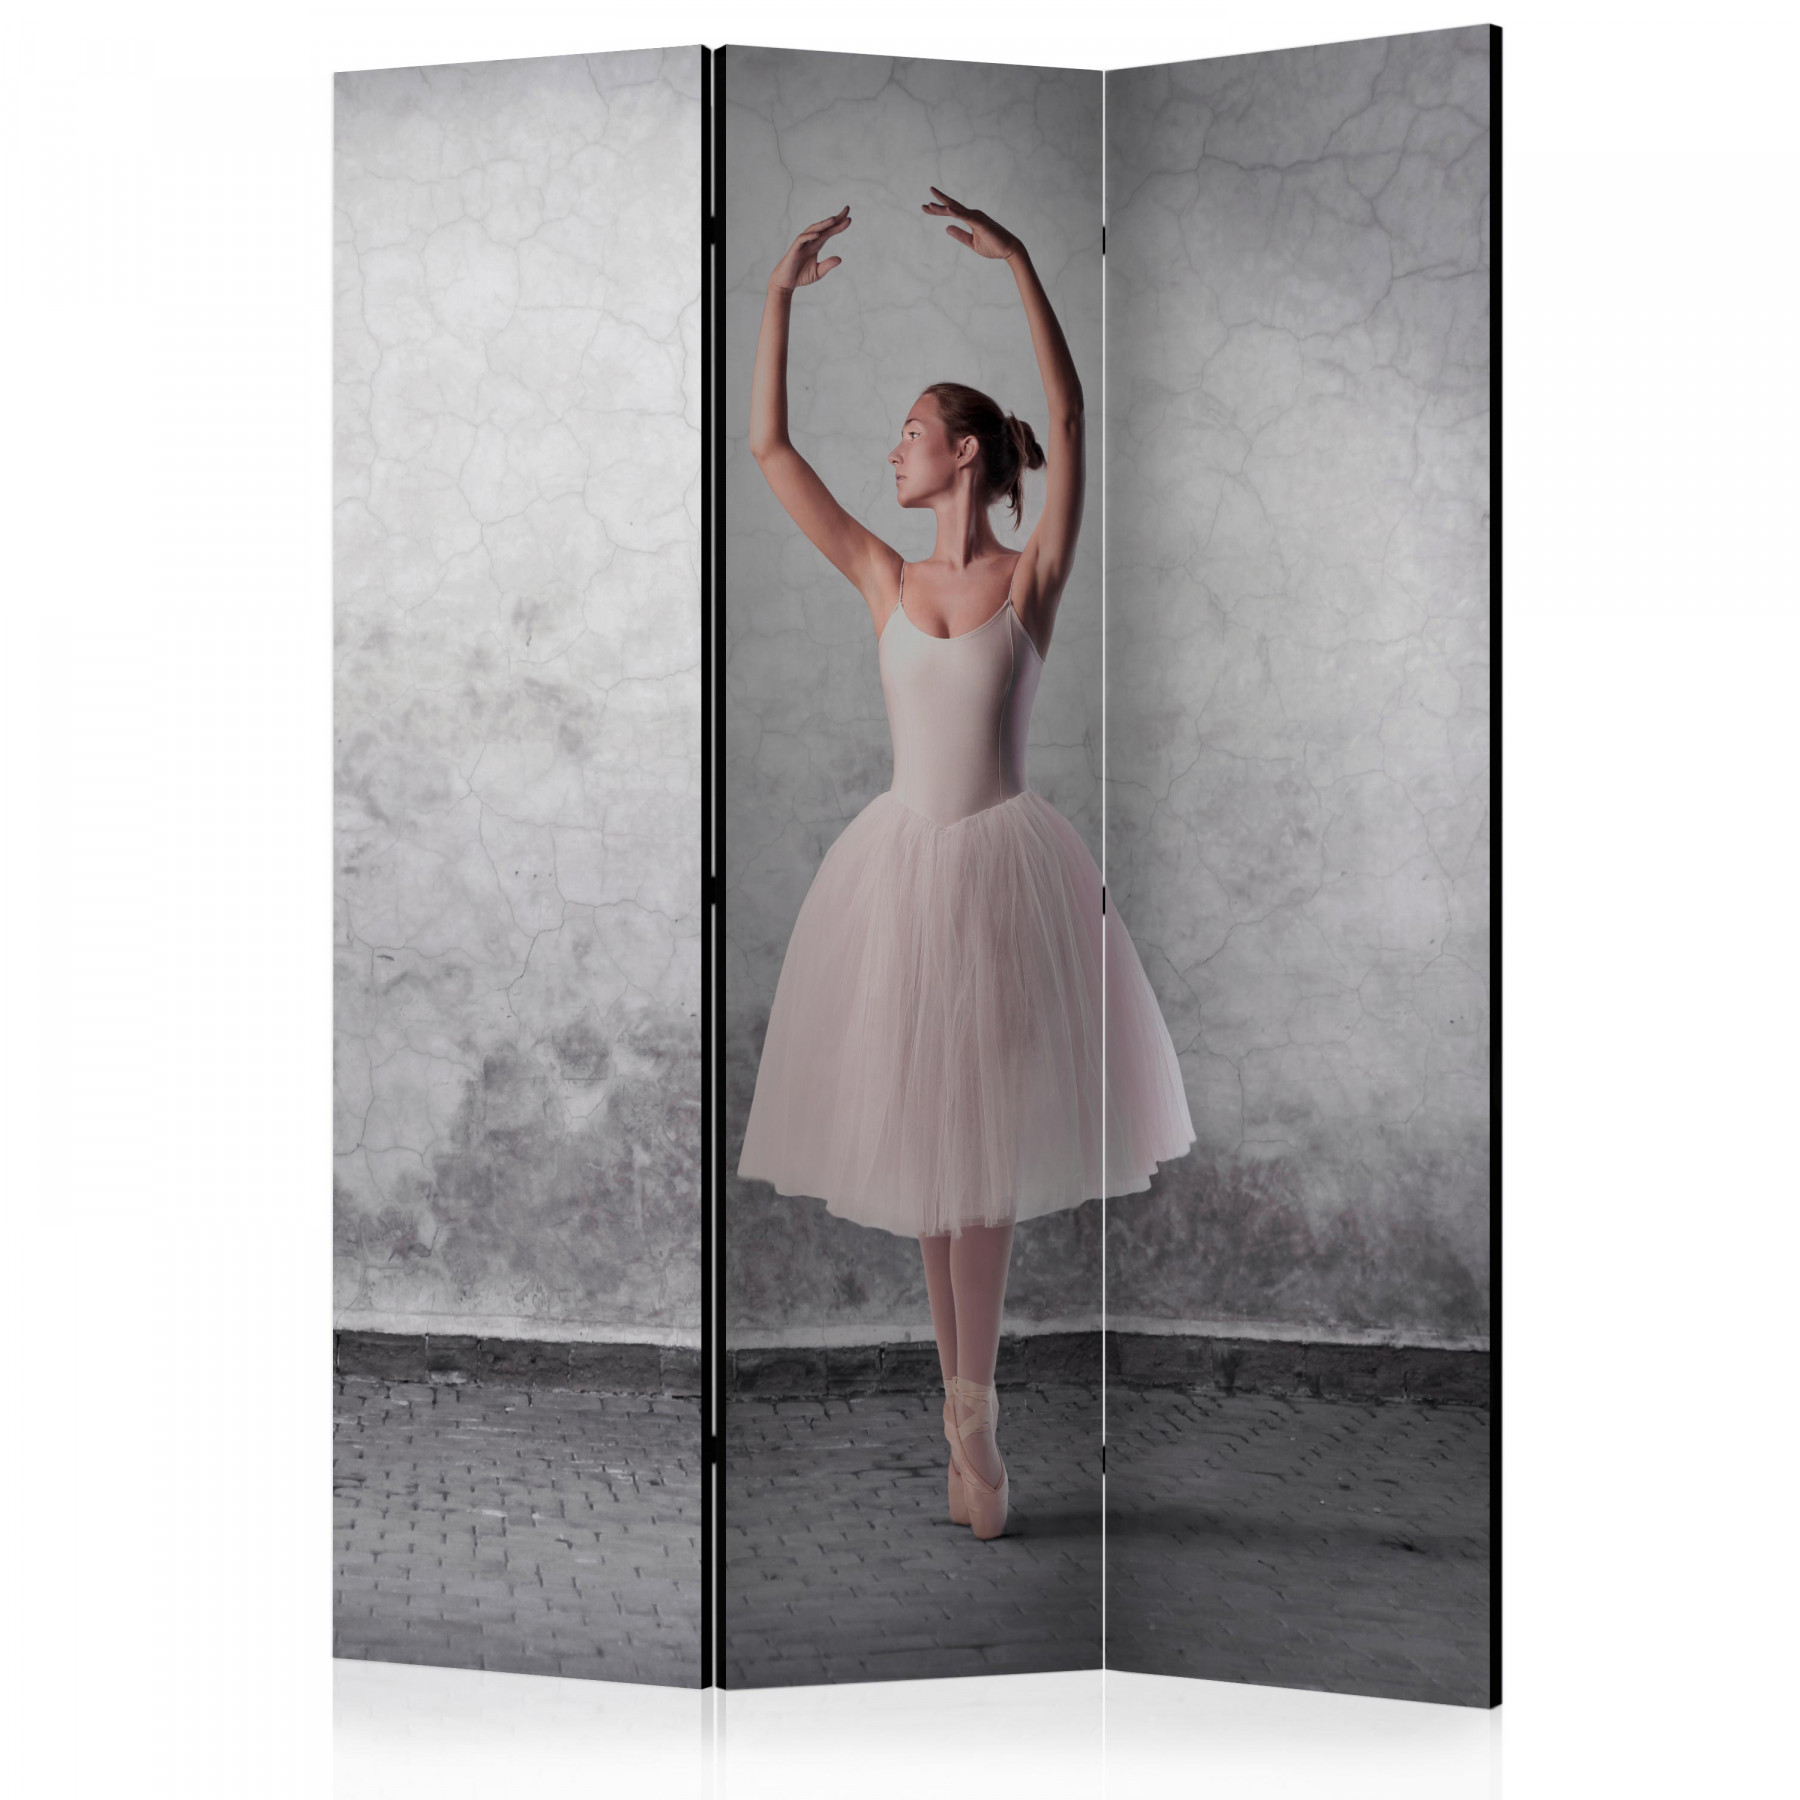 Akusztikus paraván - Ballerina in Degas paintings style [Room Dividers]